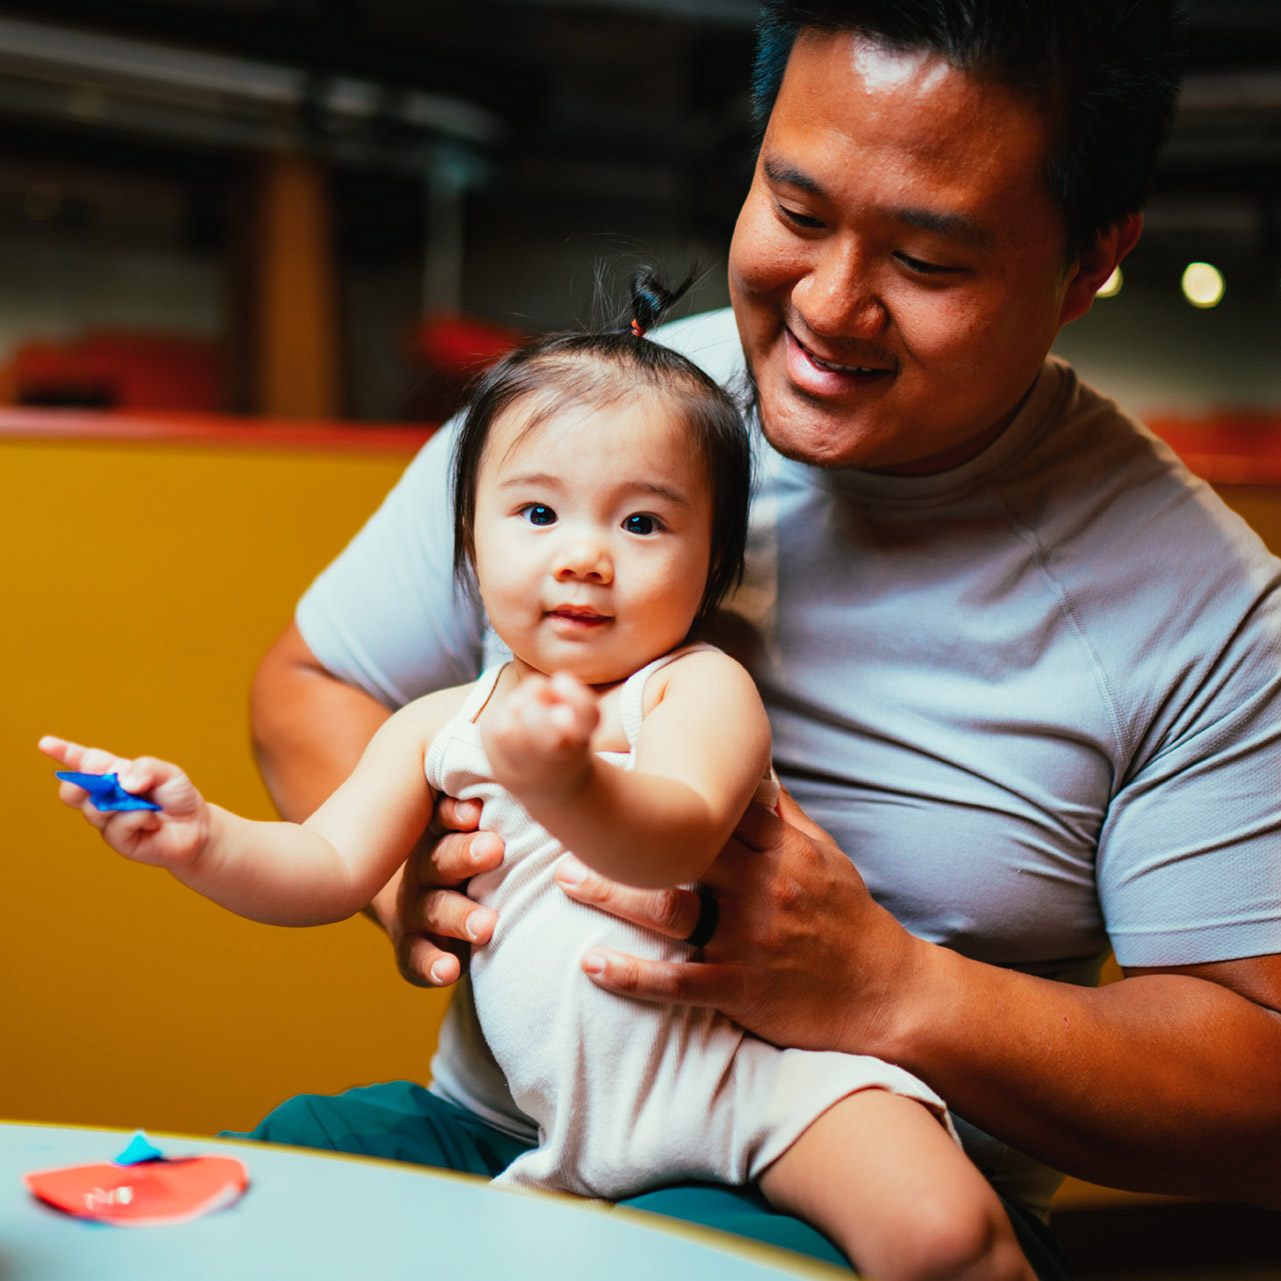 ディスカバリー・チルドレンズ・ミュージアムで、ペーパークラフトを手にする幼児の娘を抱く父親。